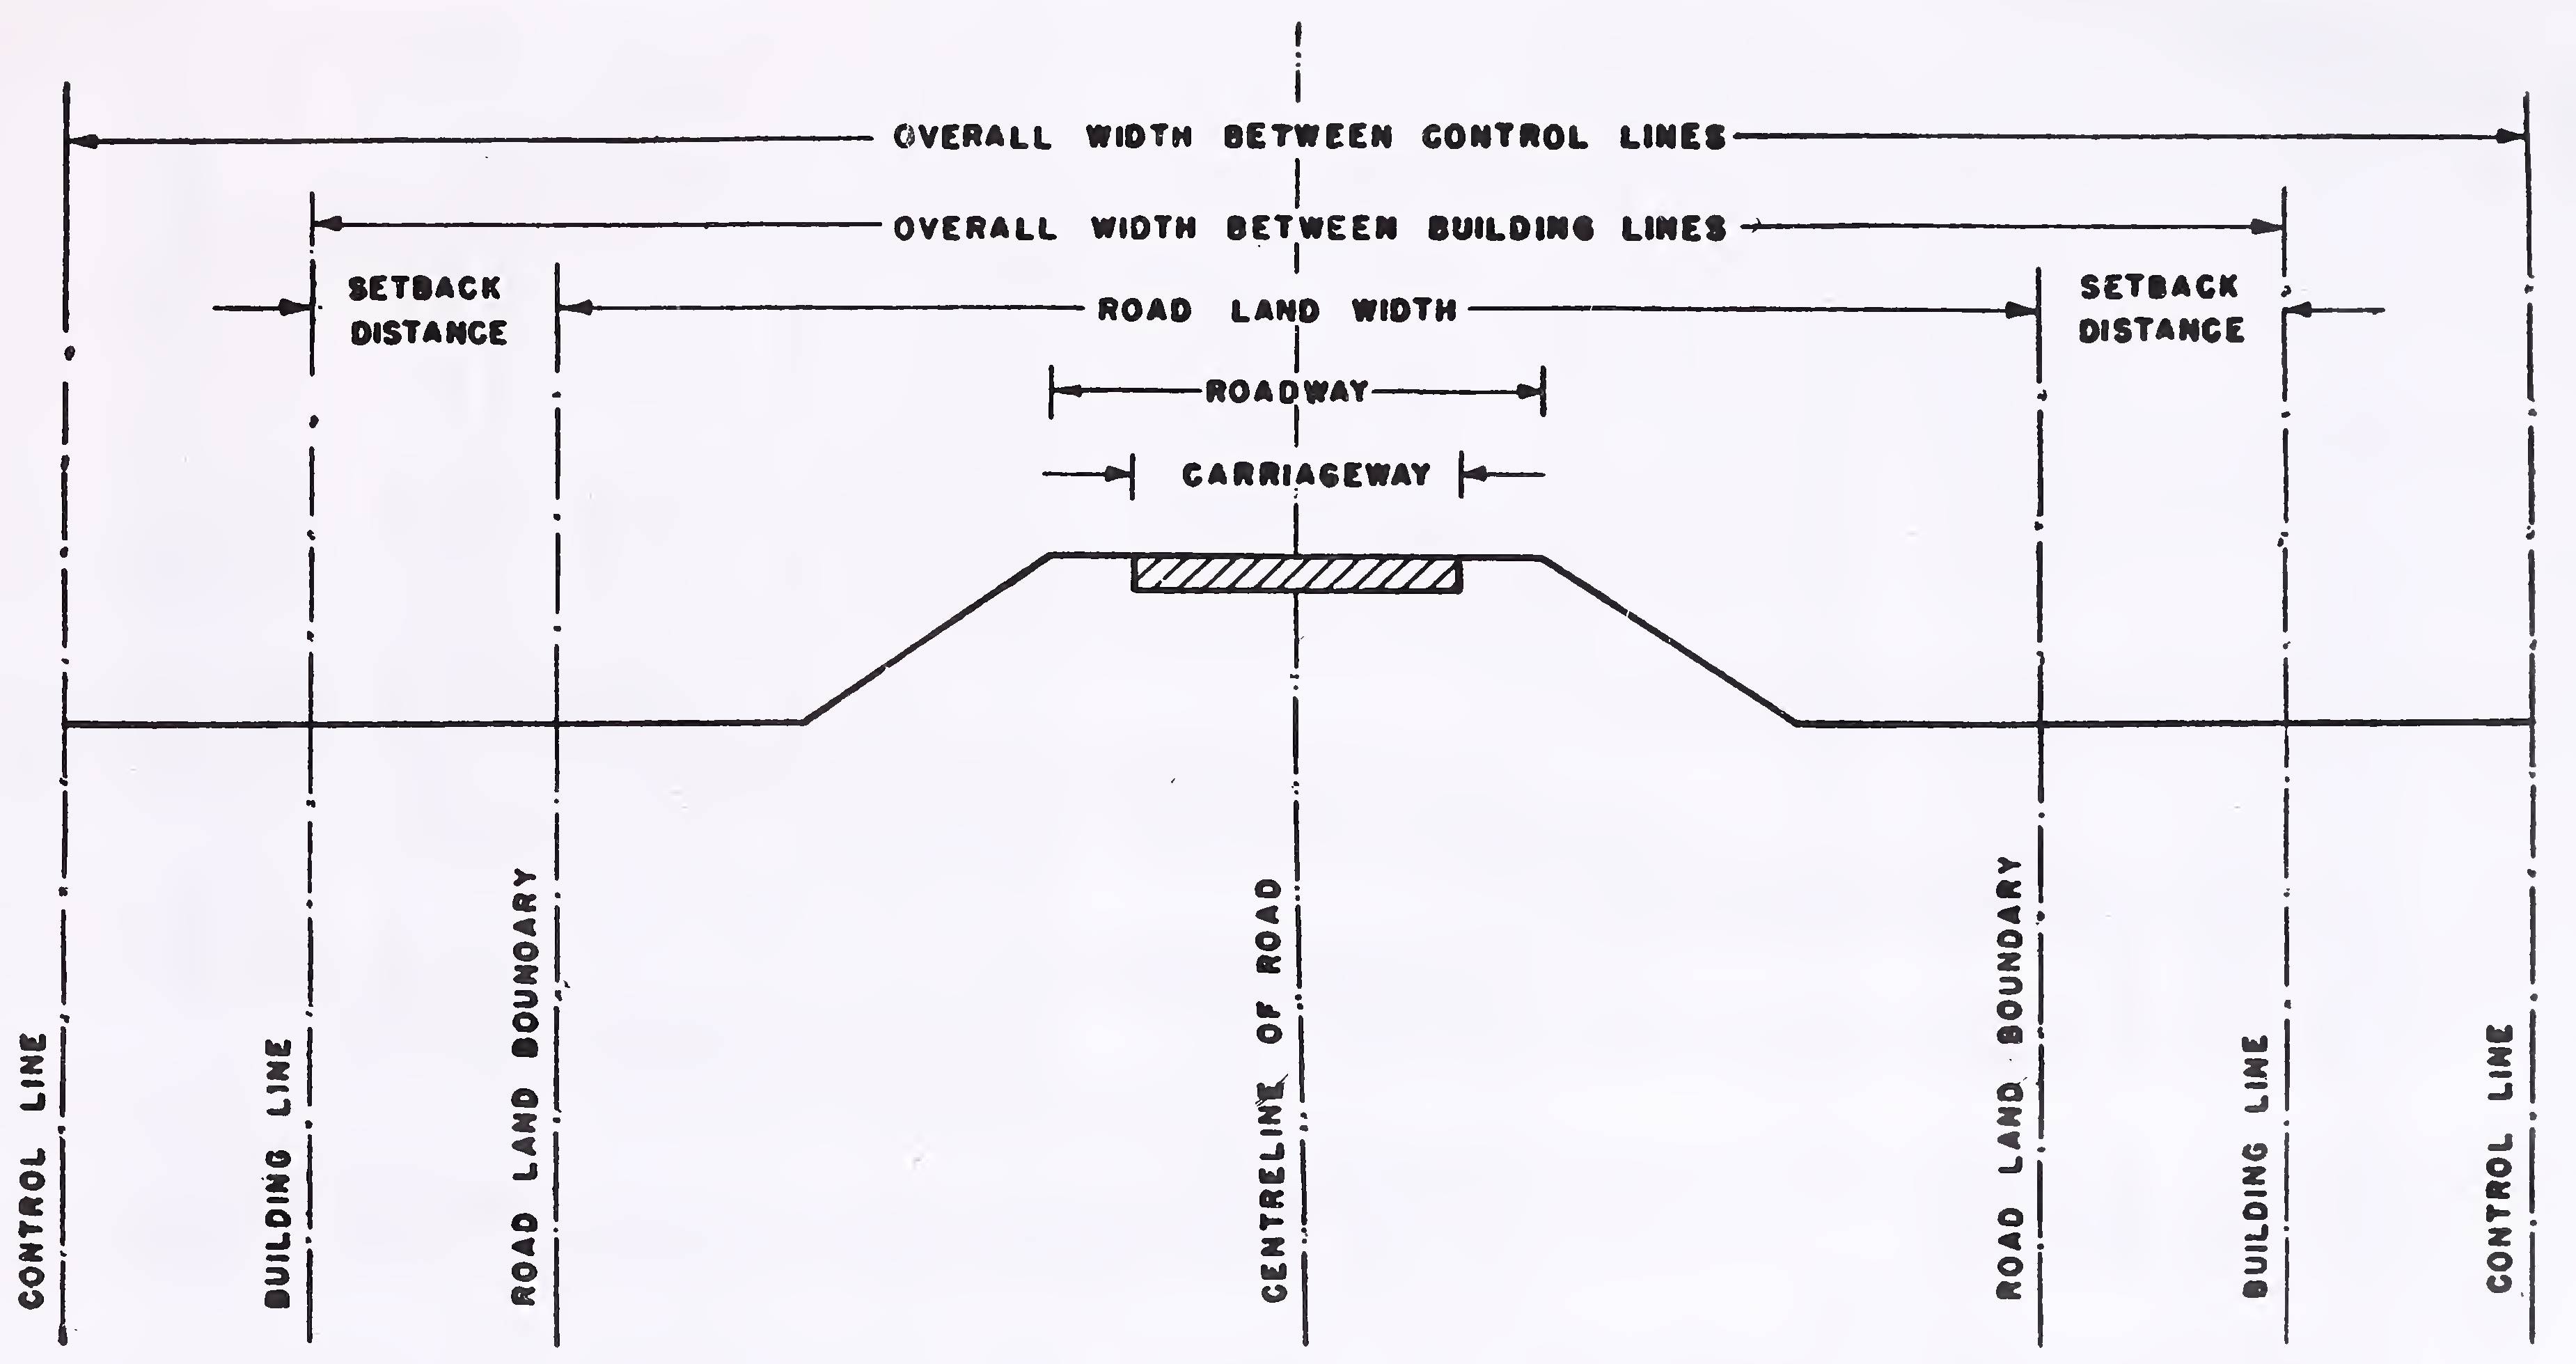 ફિગ. 1. રસ્તાની જમીનની સીમા, મકાનની લાઇન અને નિયંત્રણ રેખાઓ